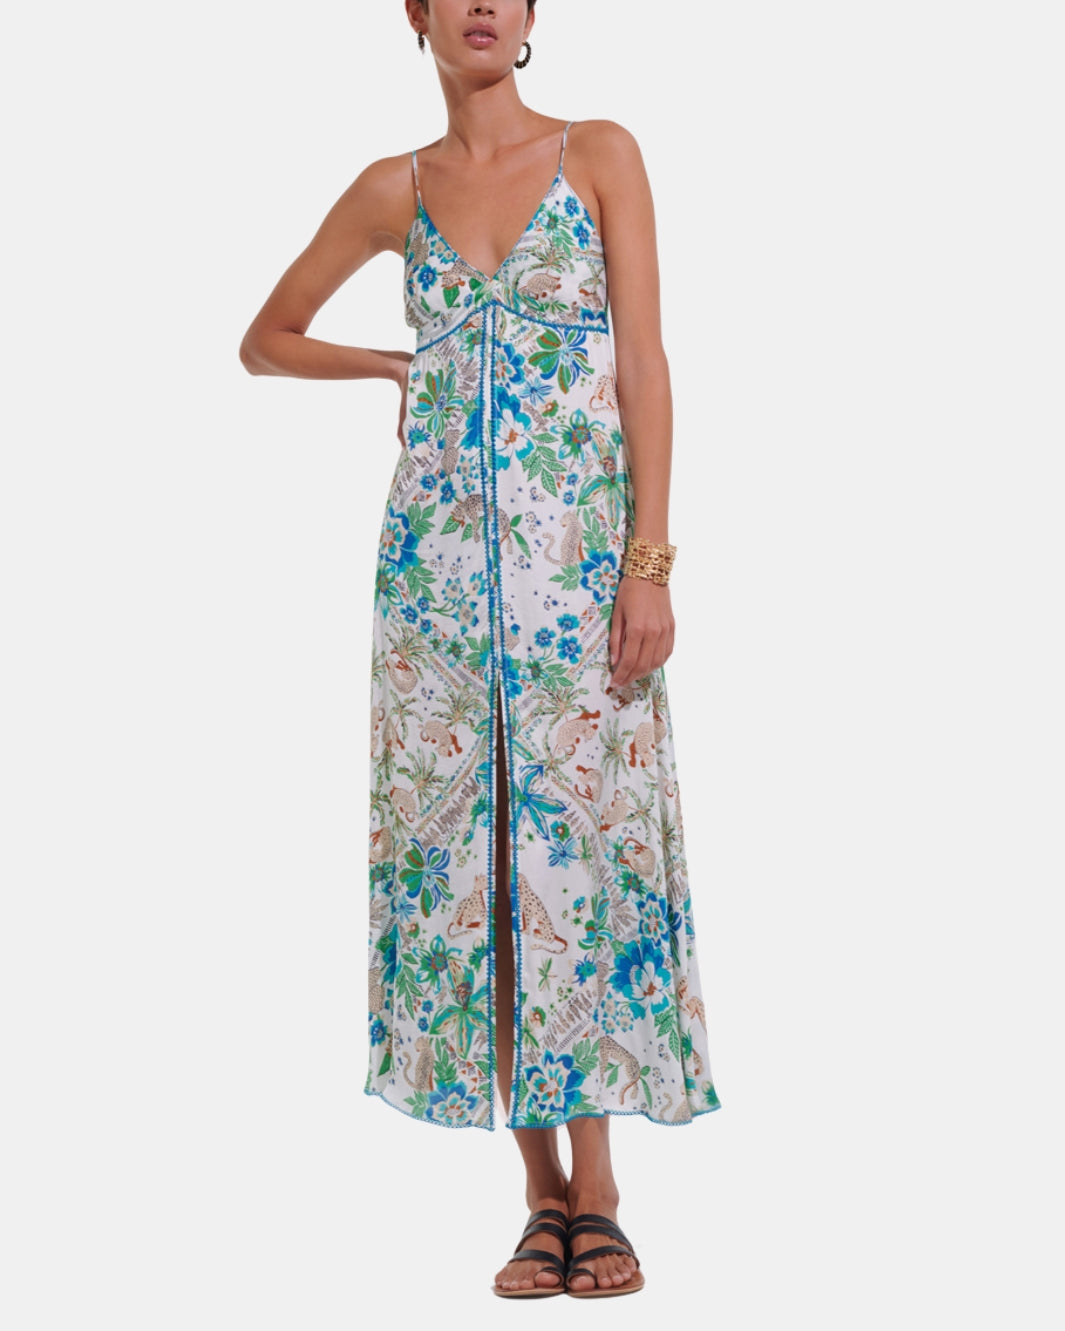 DENISE LONG DRESS IN BLUE LEO FOULARD - Romi Boutique